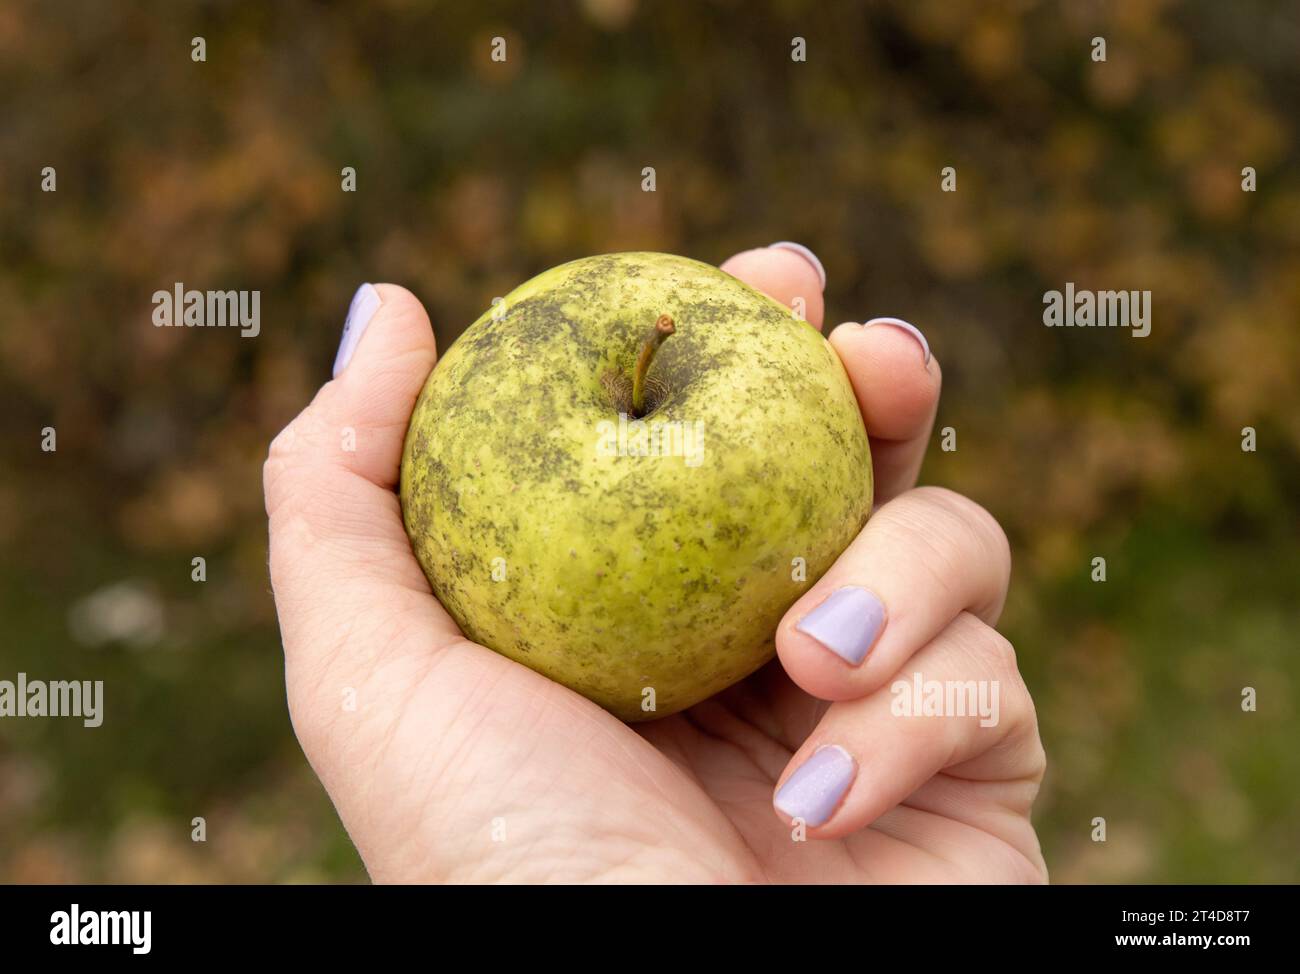 Frau, die Phyllachora pomigena, Cladosporium oder Schizothyrium pomi hält, bedeckt selbst angebauten Apfel, der ein Pflanzenpathogen ist. Stockfoto